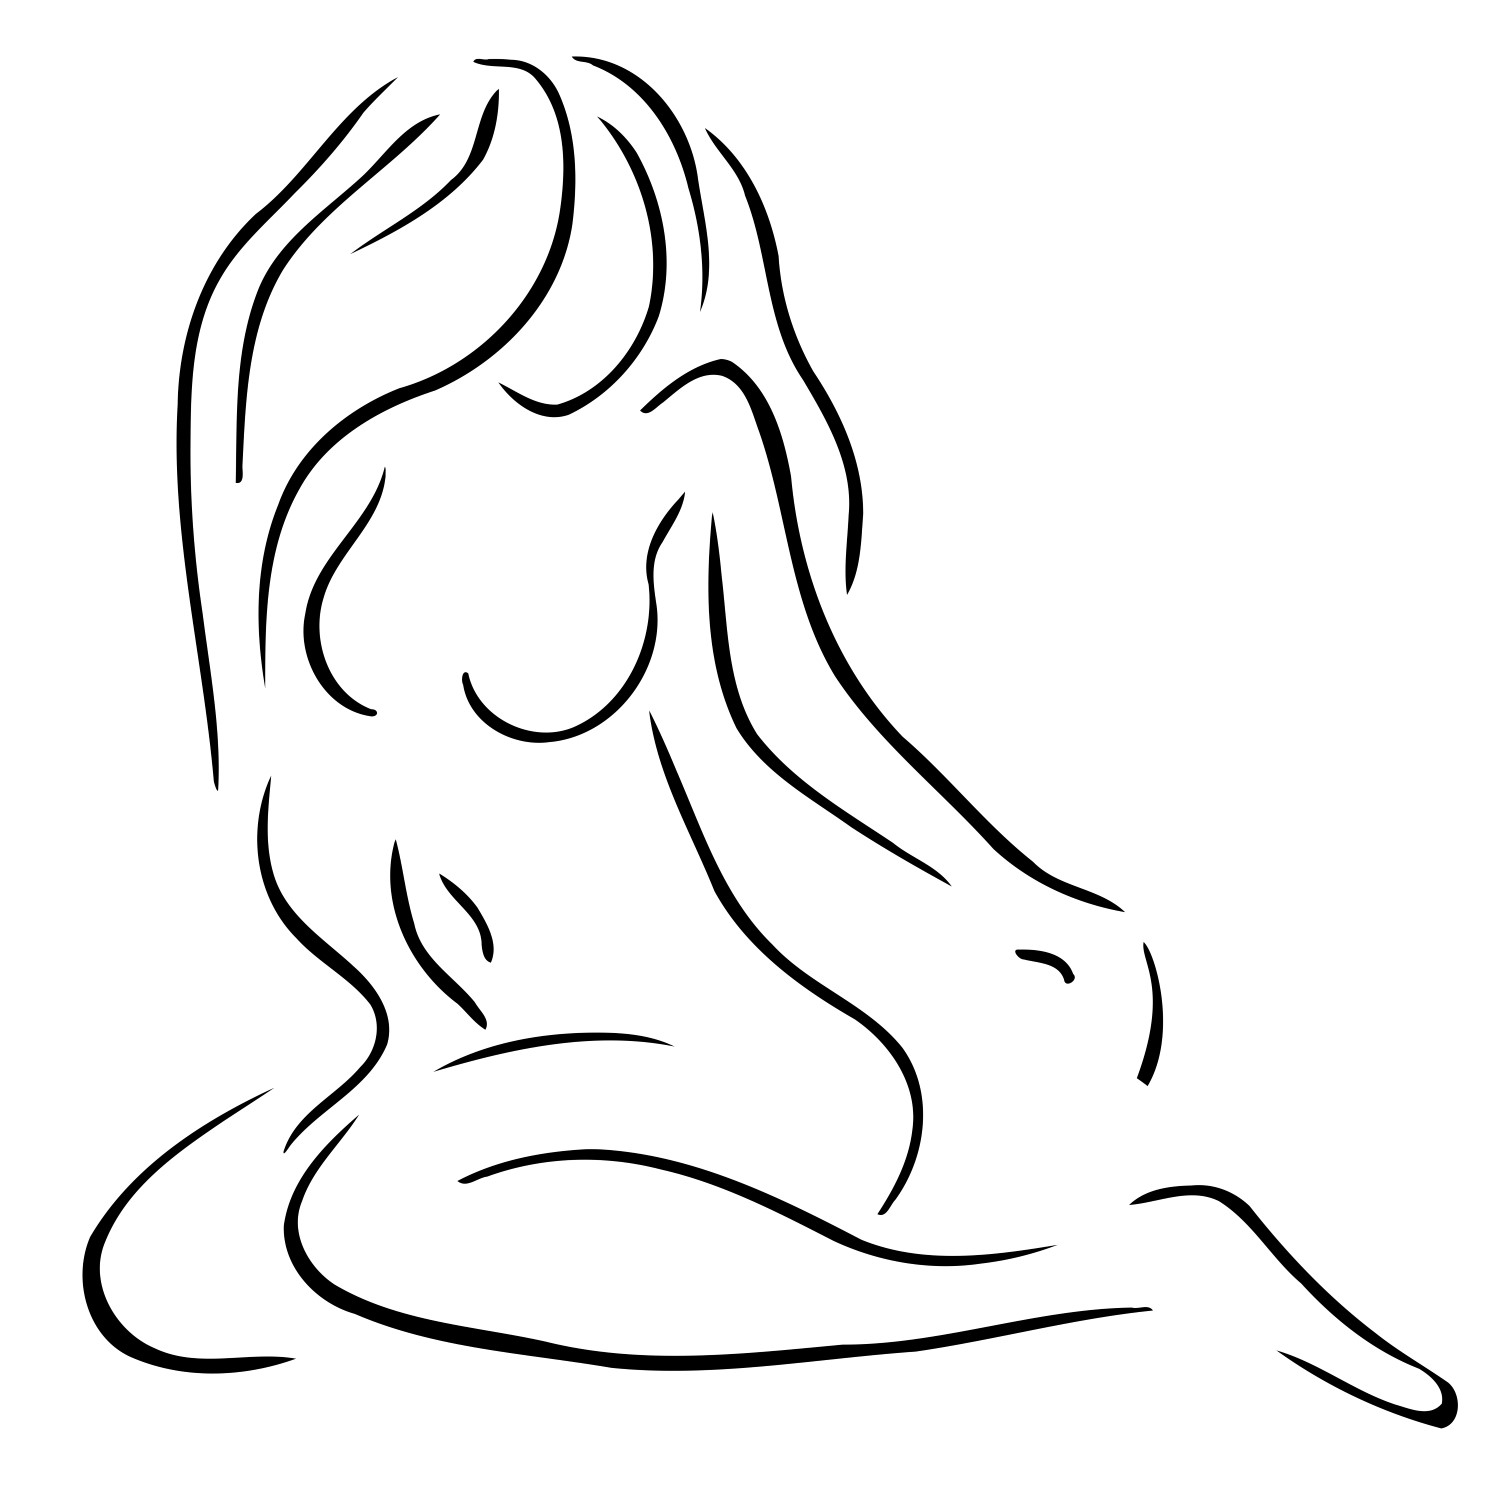 Dibond - 120 x 120 cm - lijntekening vrouwelijk lichaam